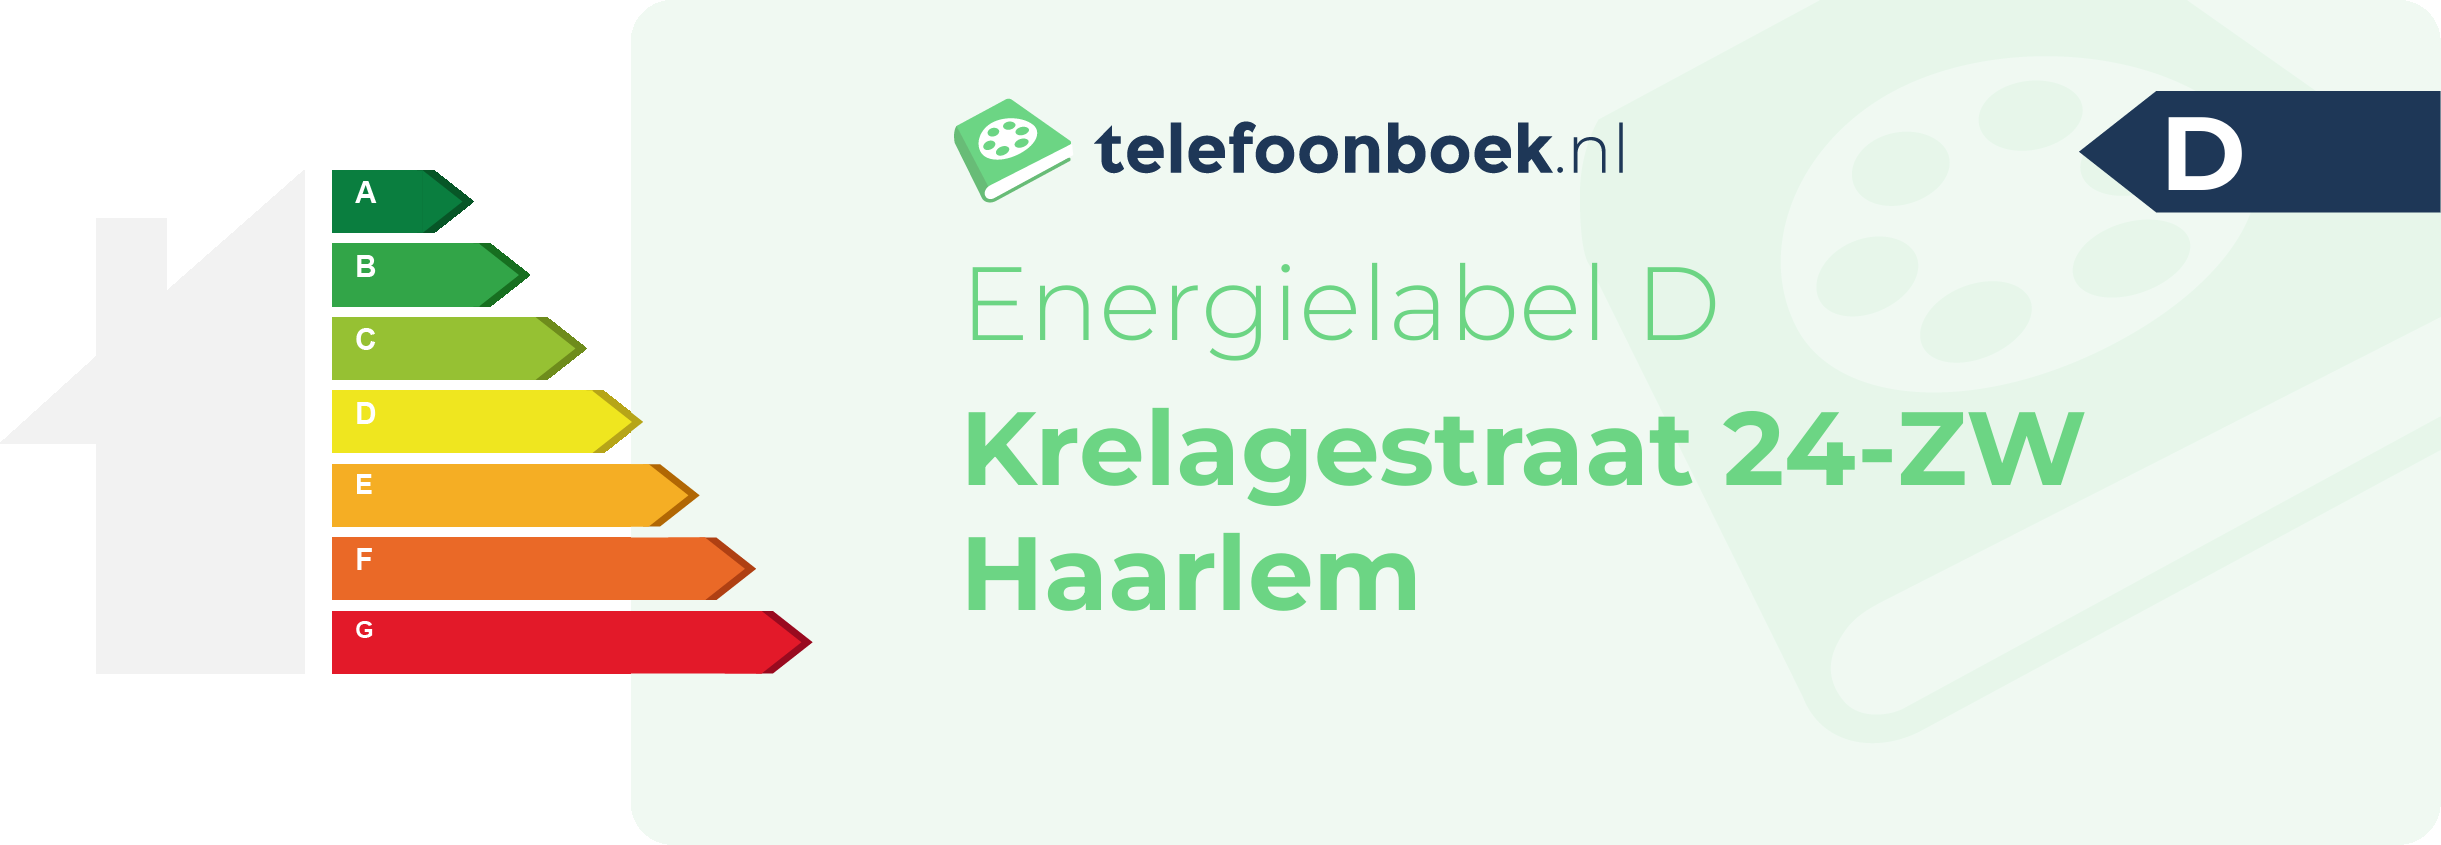 Energielabel Krelagestraat 24-ZW Haarlem